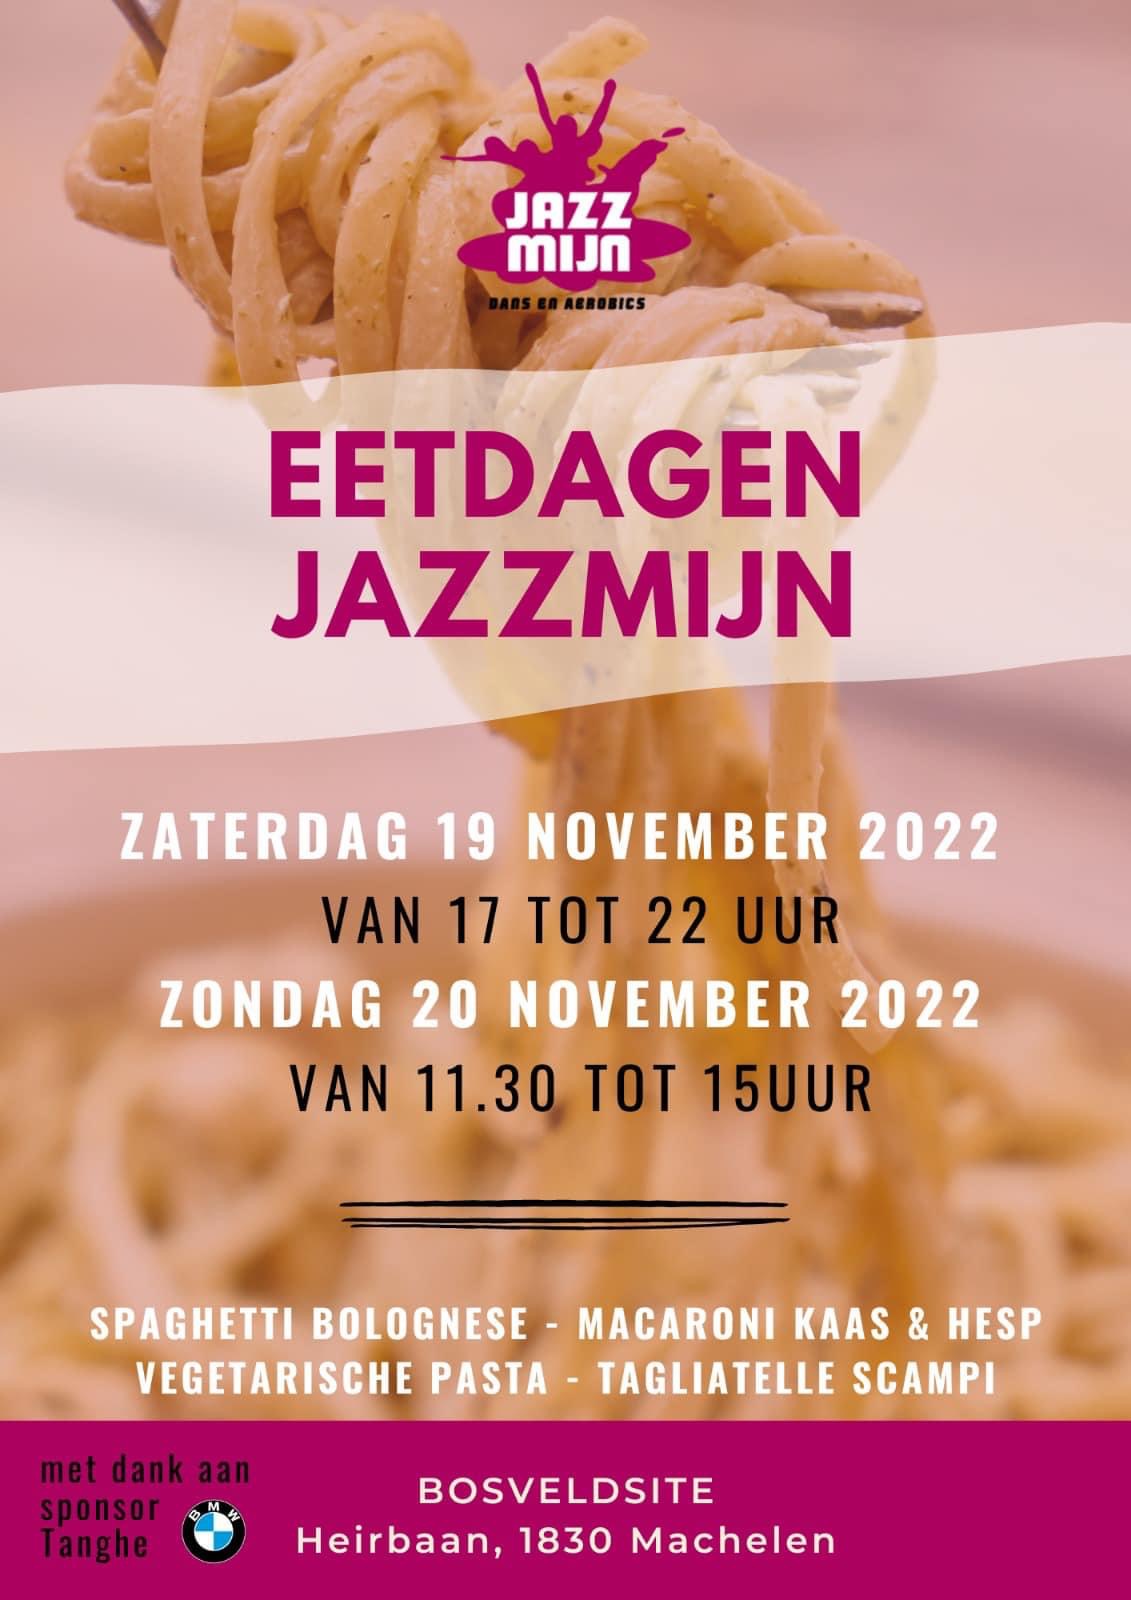 Eetdagen jazzmijn 2022